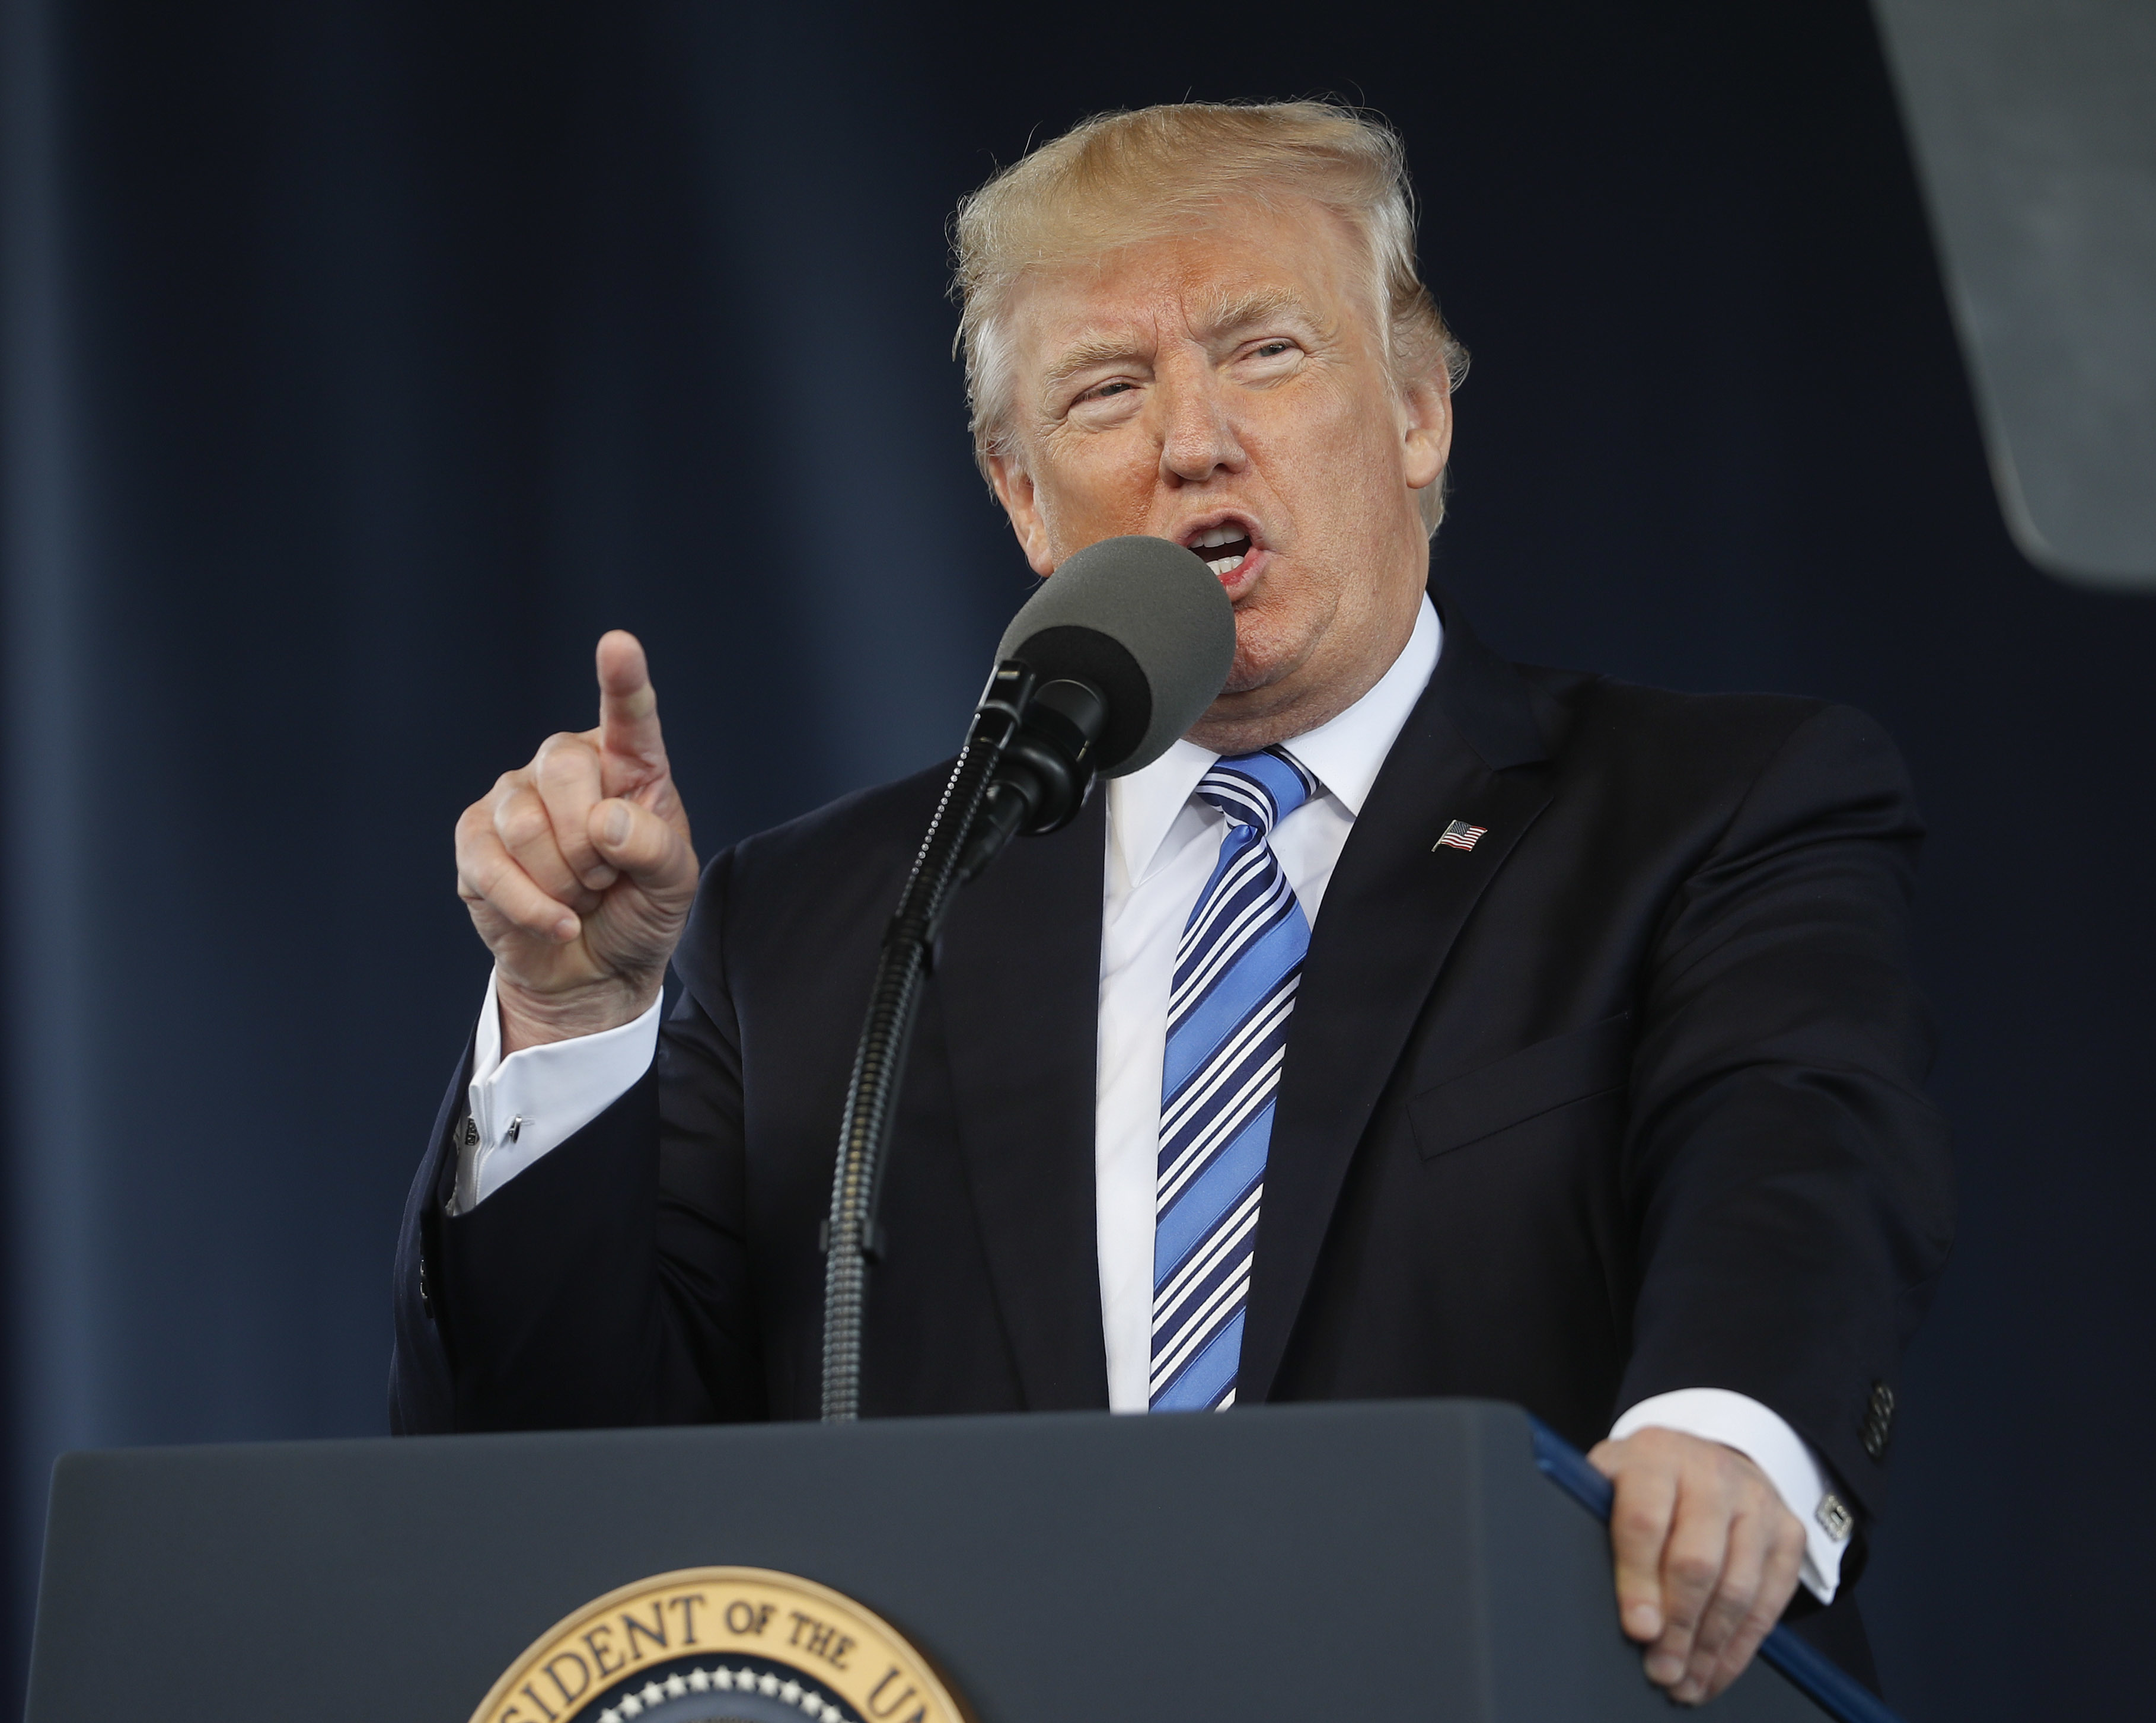 El presidente Donald Trump da el discurso de apertura de la Clase del 2017 en la Universidad Liberty en Lynchburg, Virginia. (AP)